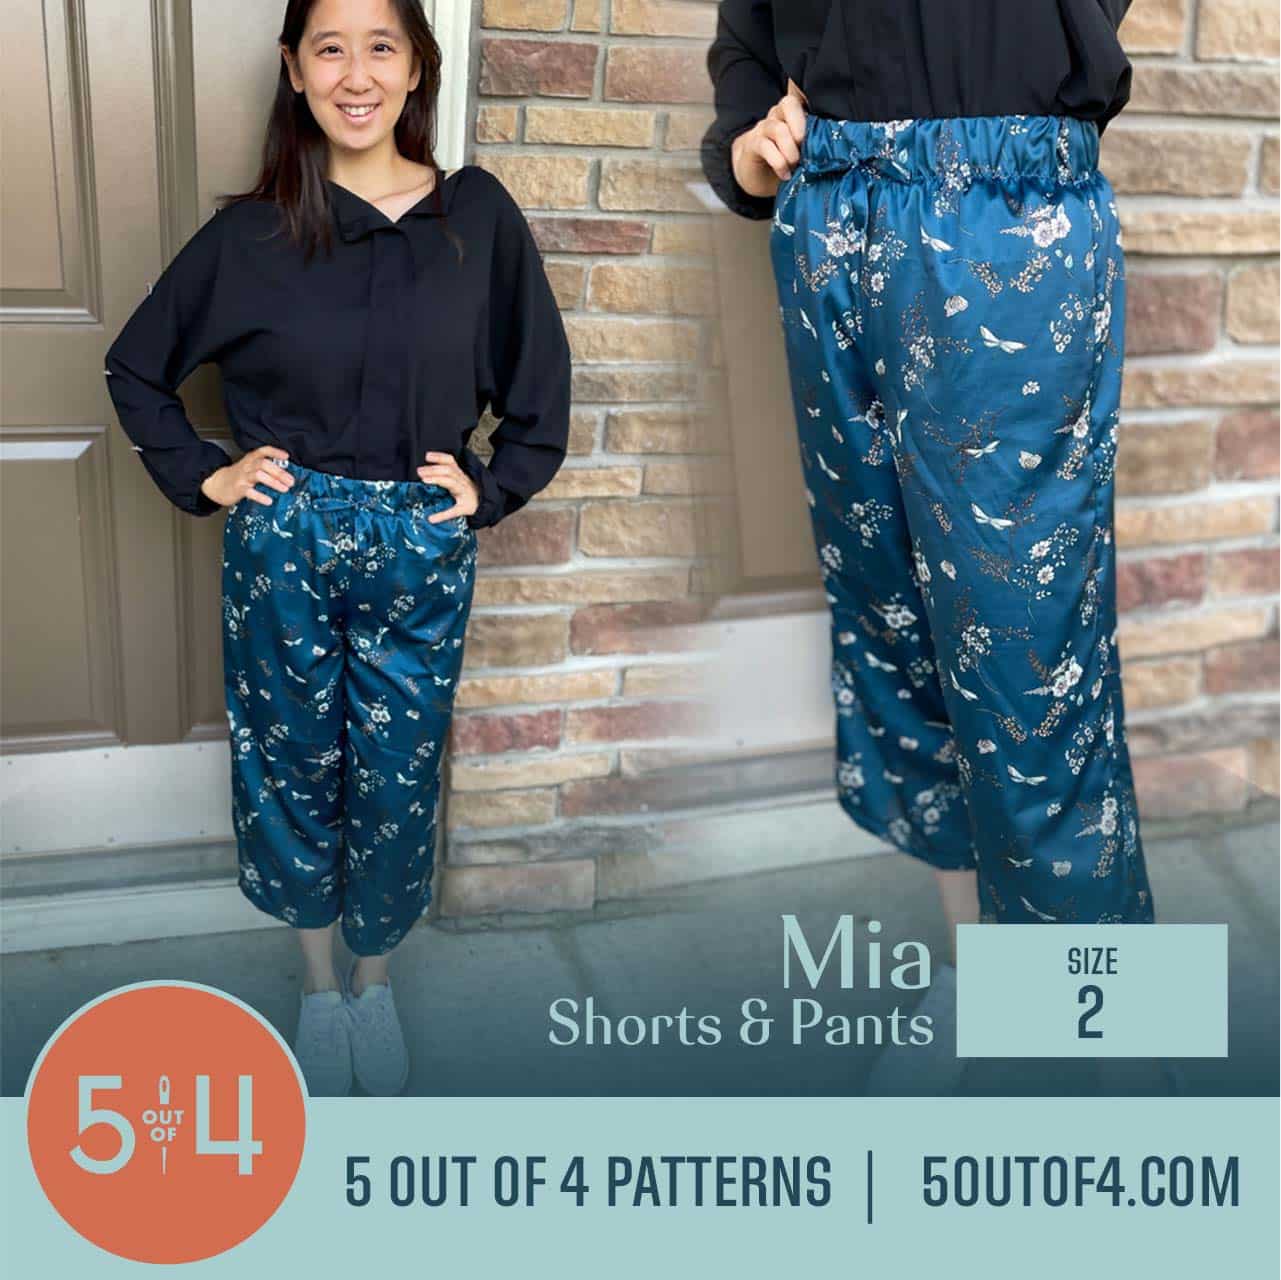 Mia Shorts and Pants